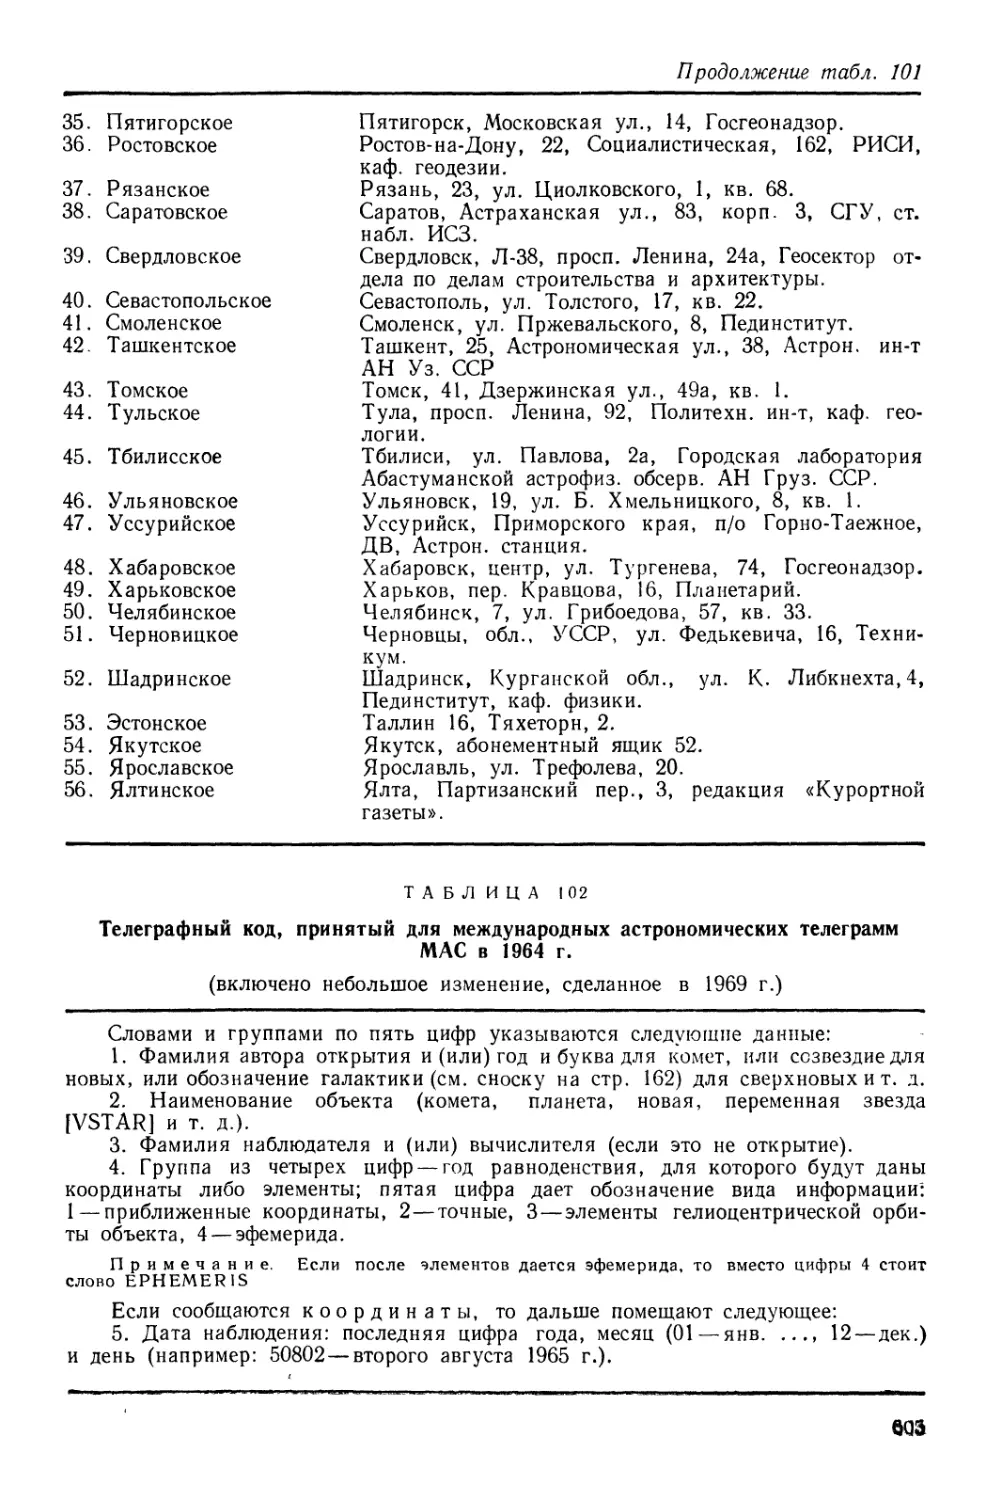 102. Телеграфный код, принятый для международных астрономических телеграмм MAC в 1964 г